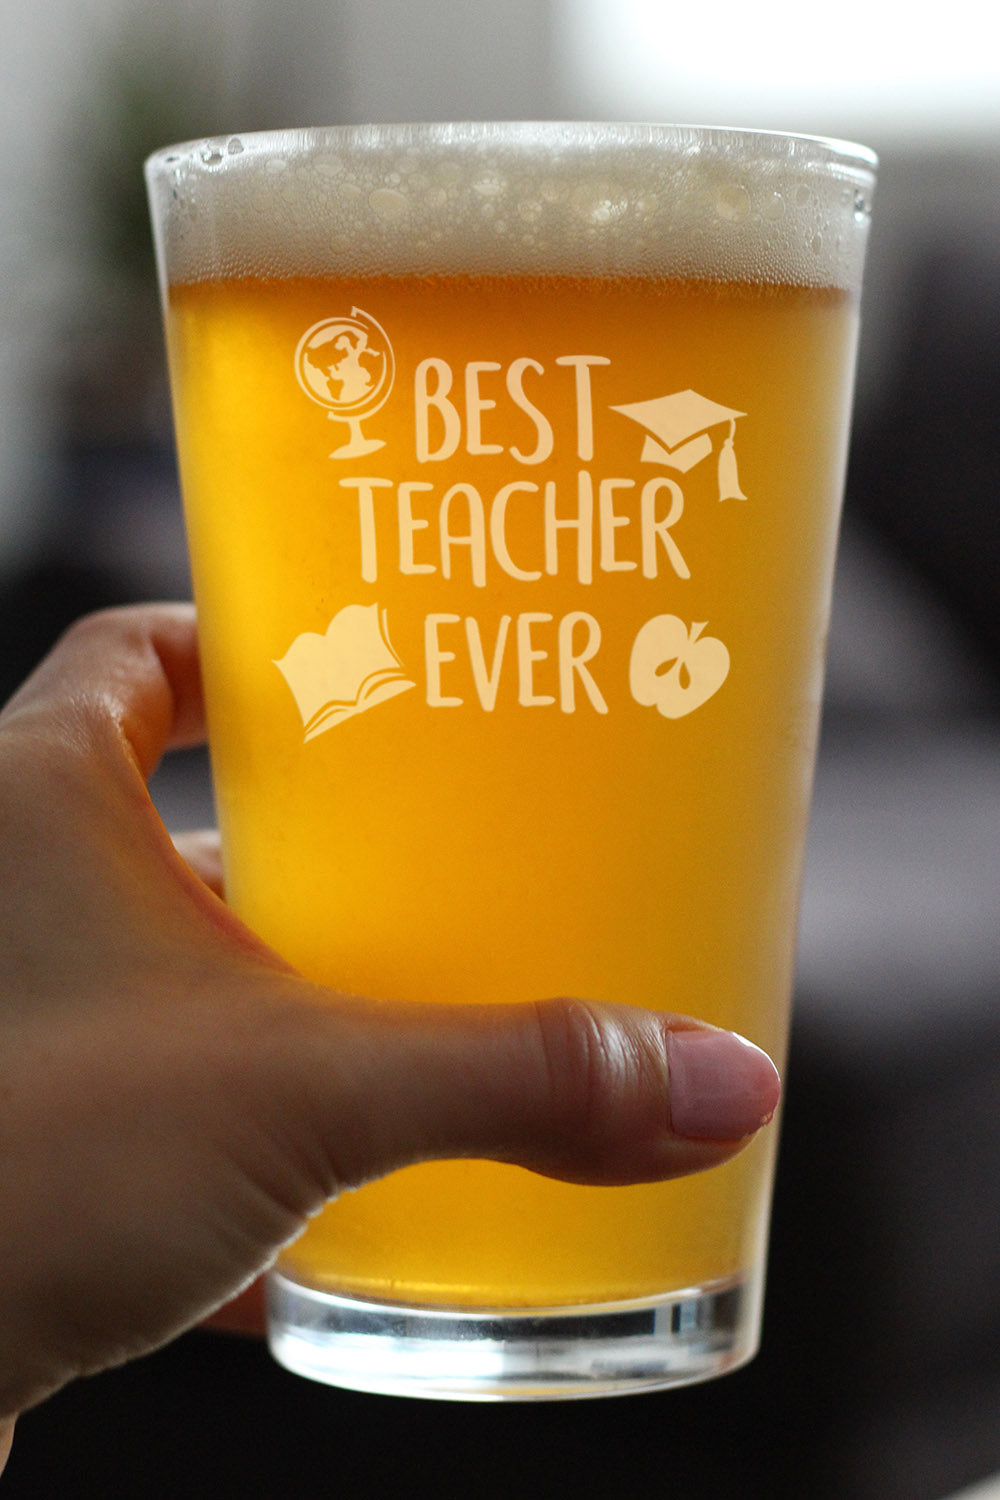 Best Teacher Ever - Pint Glass for Beer - Cute Funny Teacher Gifts for Women &amp; Men - Fun School Decor - 16 oz Glasses